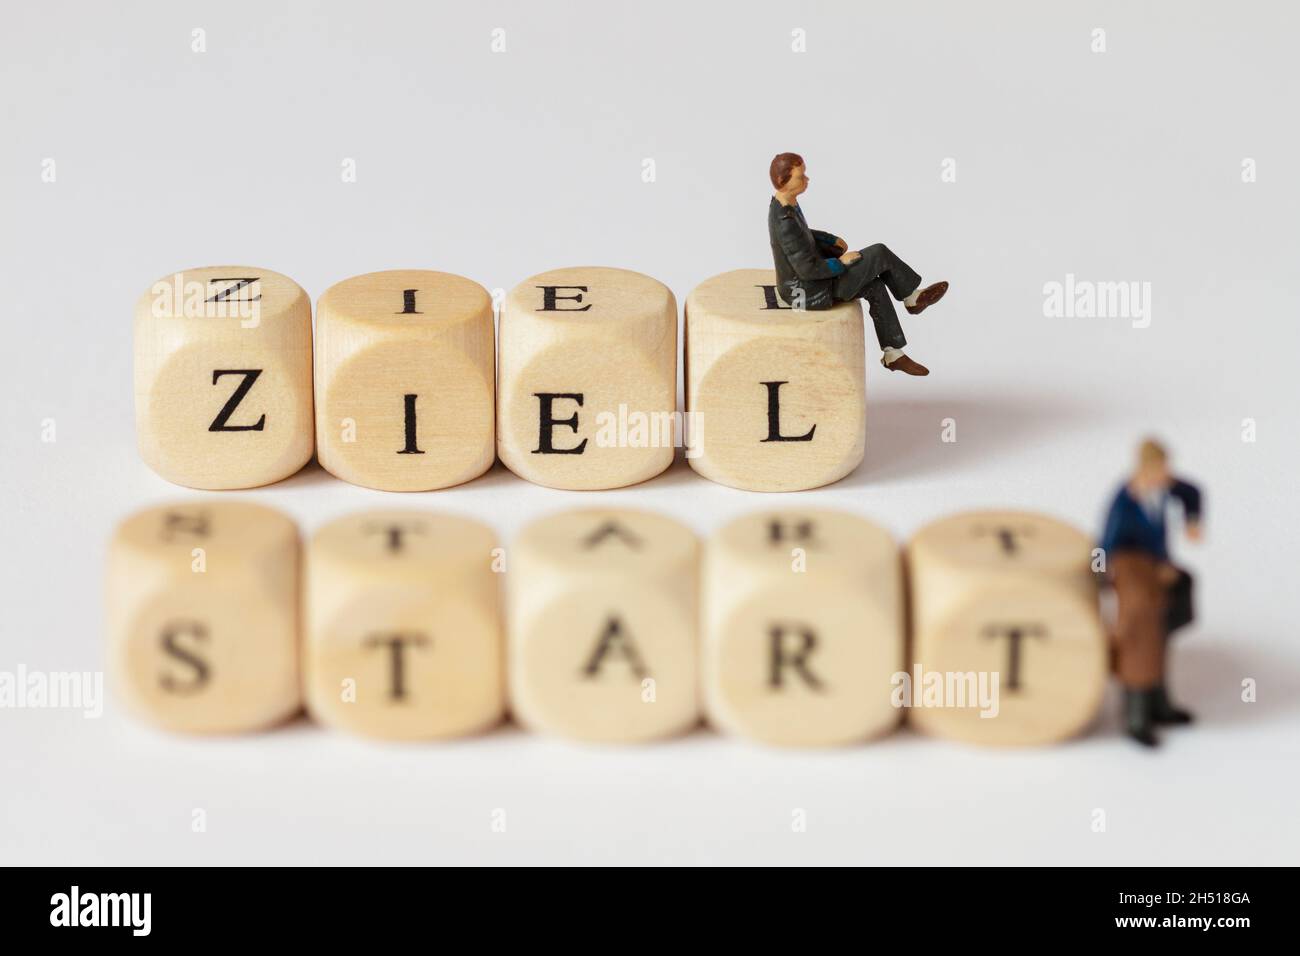 Piccole figure in plastica con parole fatte da cubi di lettere. La parola tedesca per obiettivo e per inizio può essere letta Foto Stock